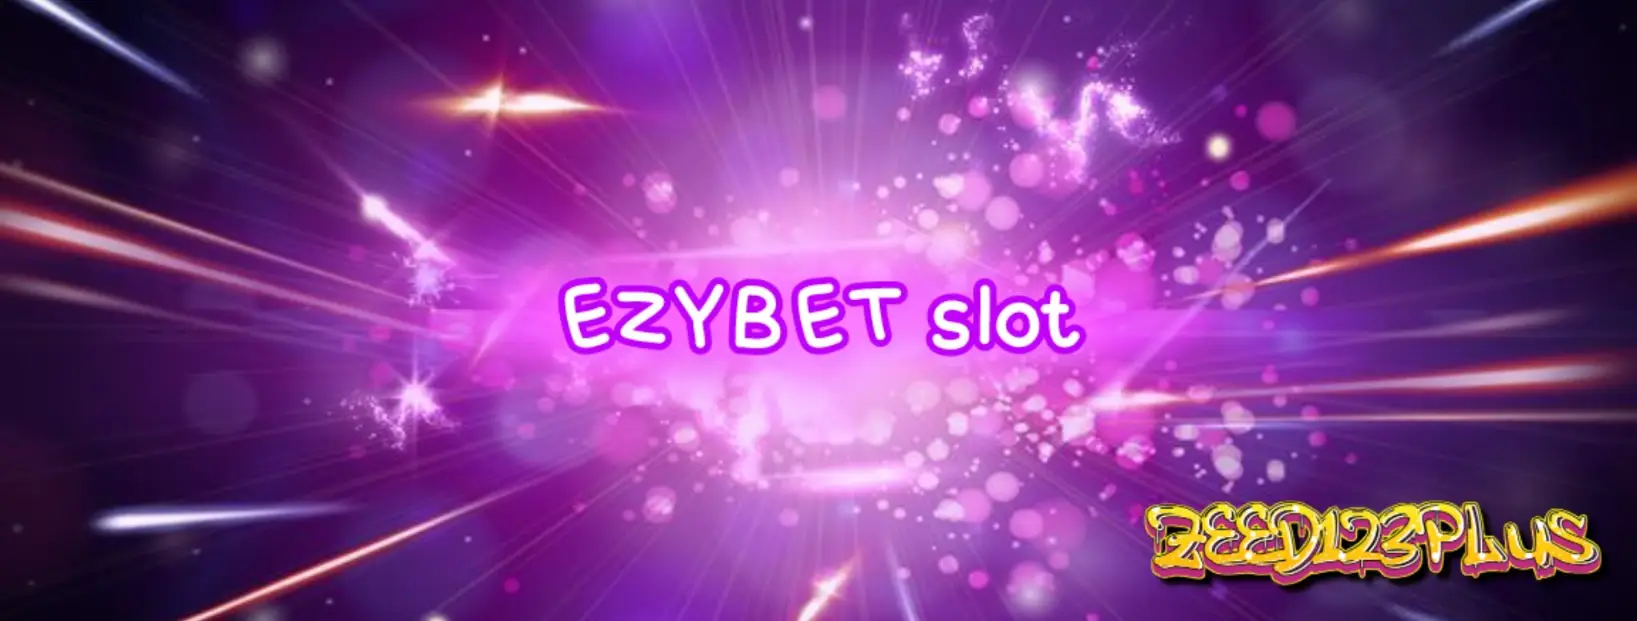 เข้าร่วมสนุกกับเกมสล็อต EZYBET slot และสนุกไปกับการเล่นที่น่าตื่นเต้น!